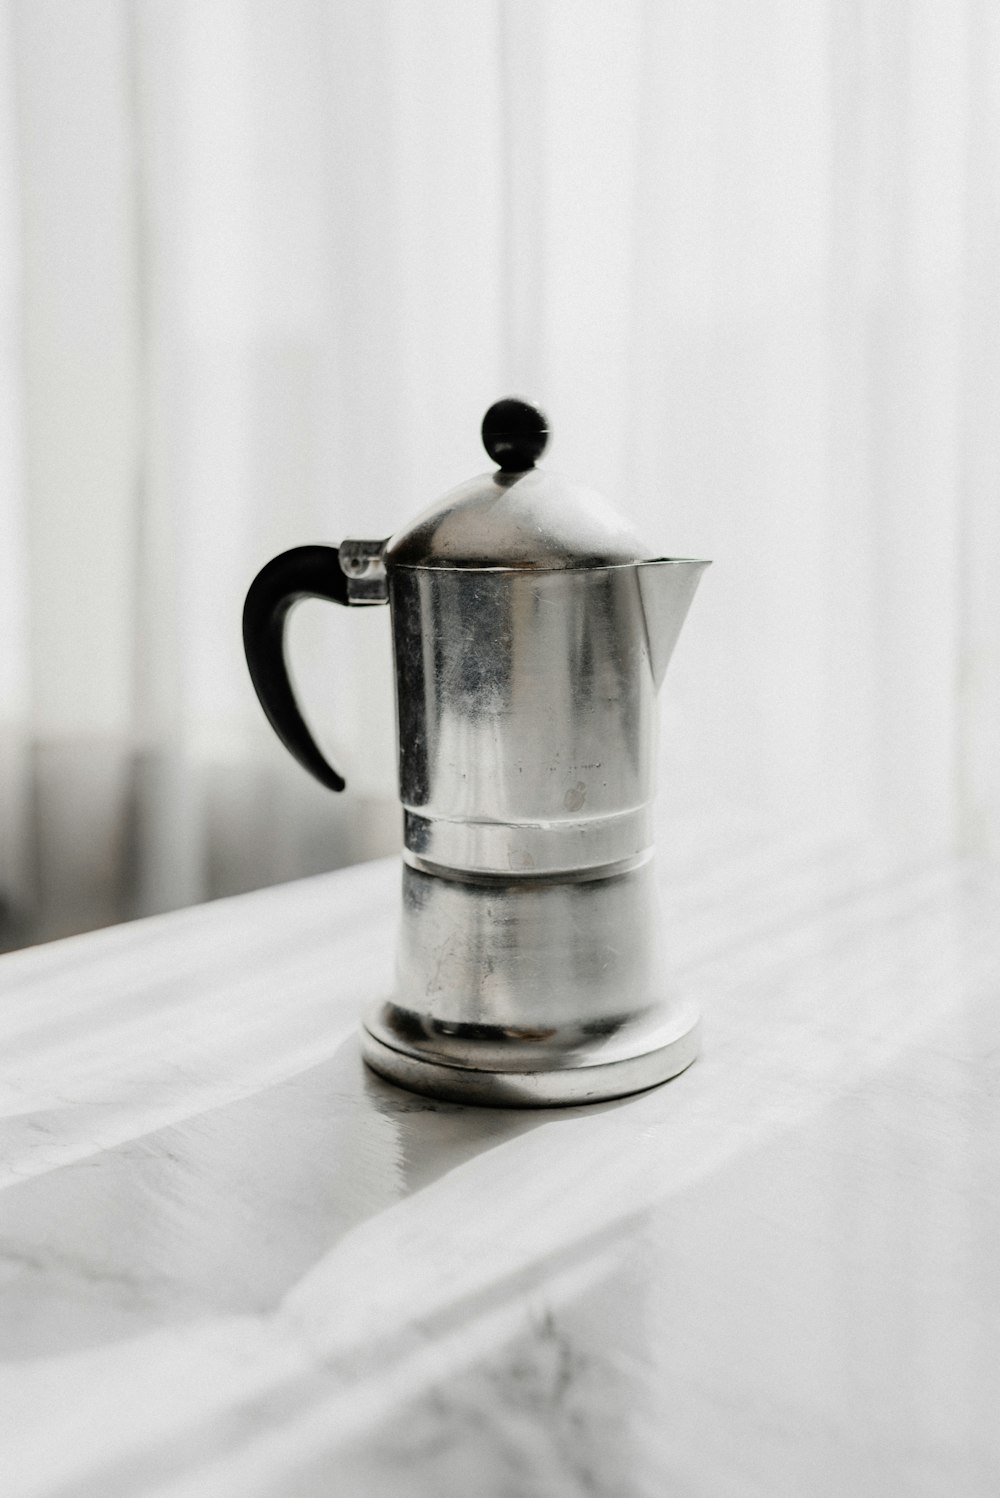 stainless steel teapot on white textile